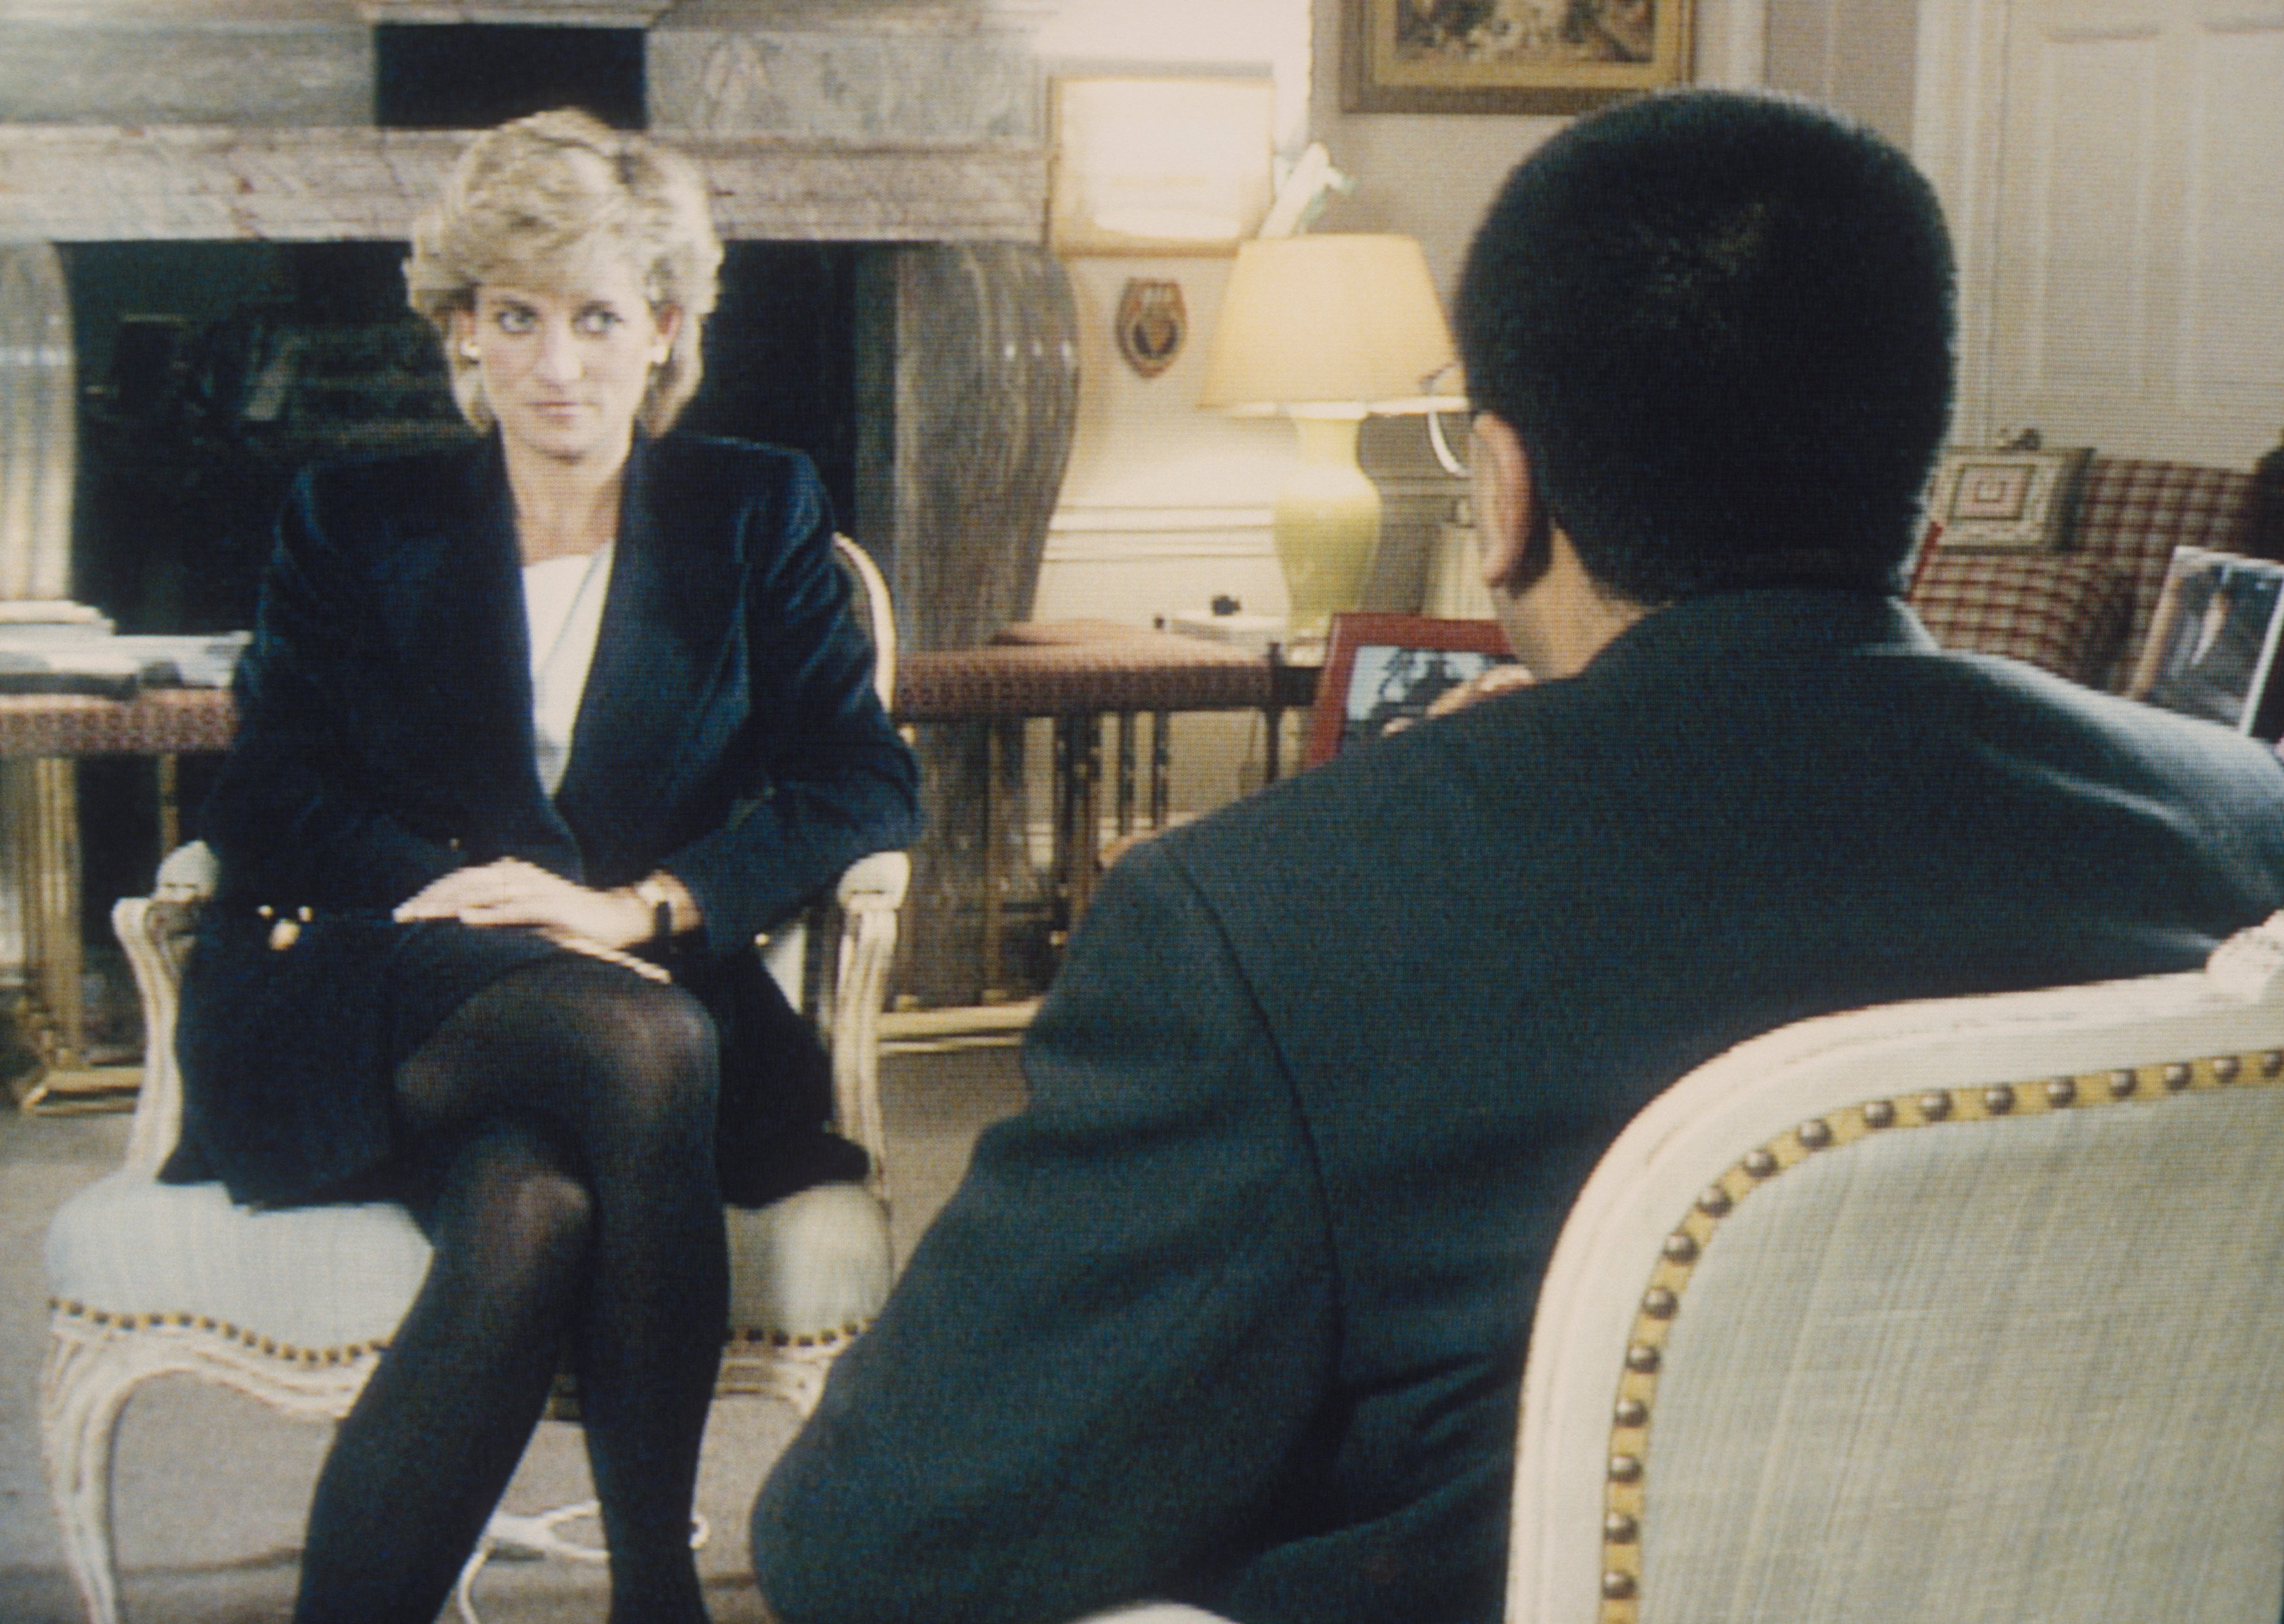 Martin Bashir interviews Princess Diana in Kensington Palace for ‘Panorama’ in 1995